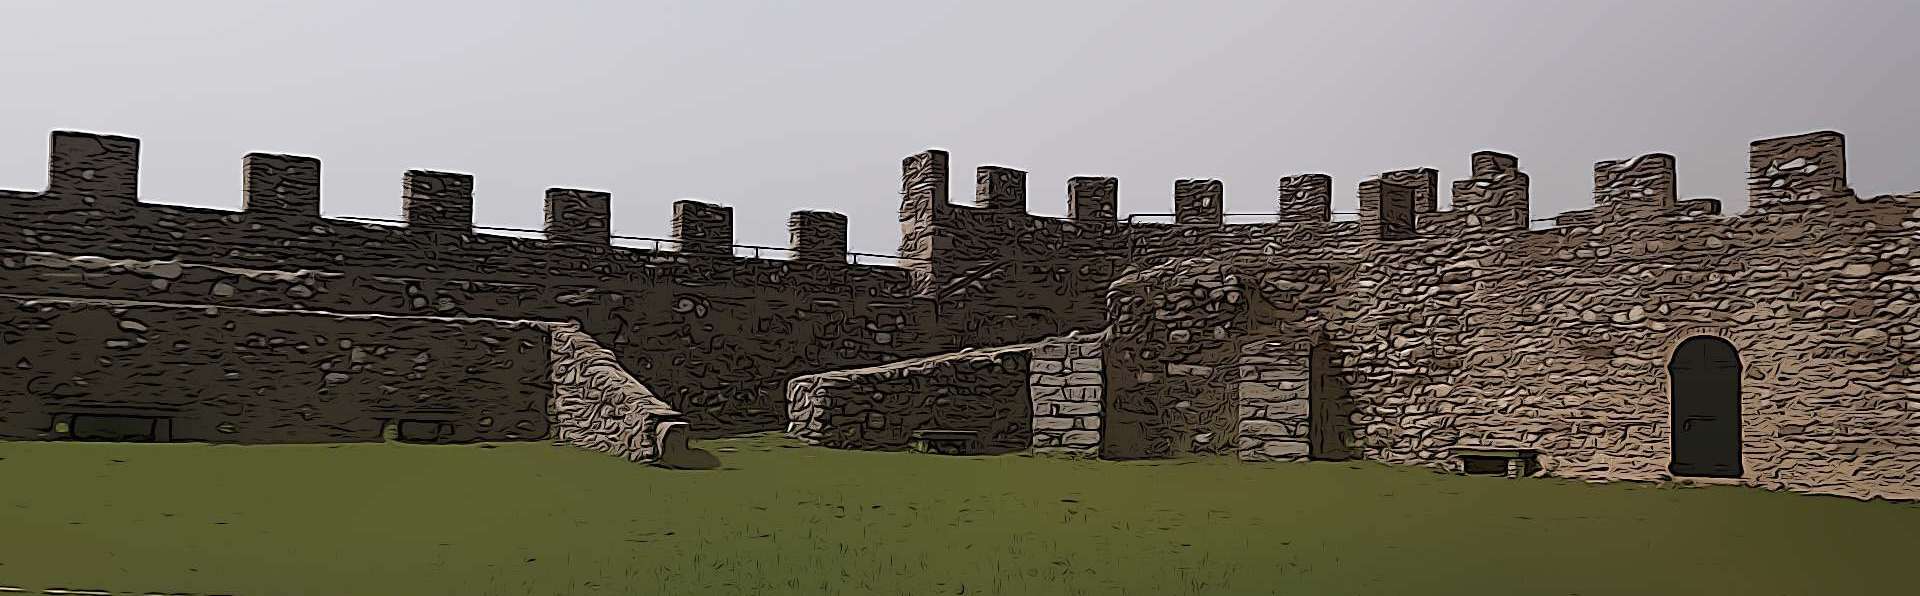 Castello di Lonato